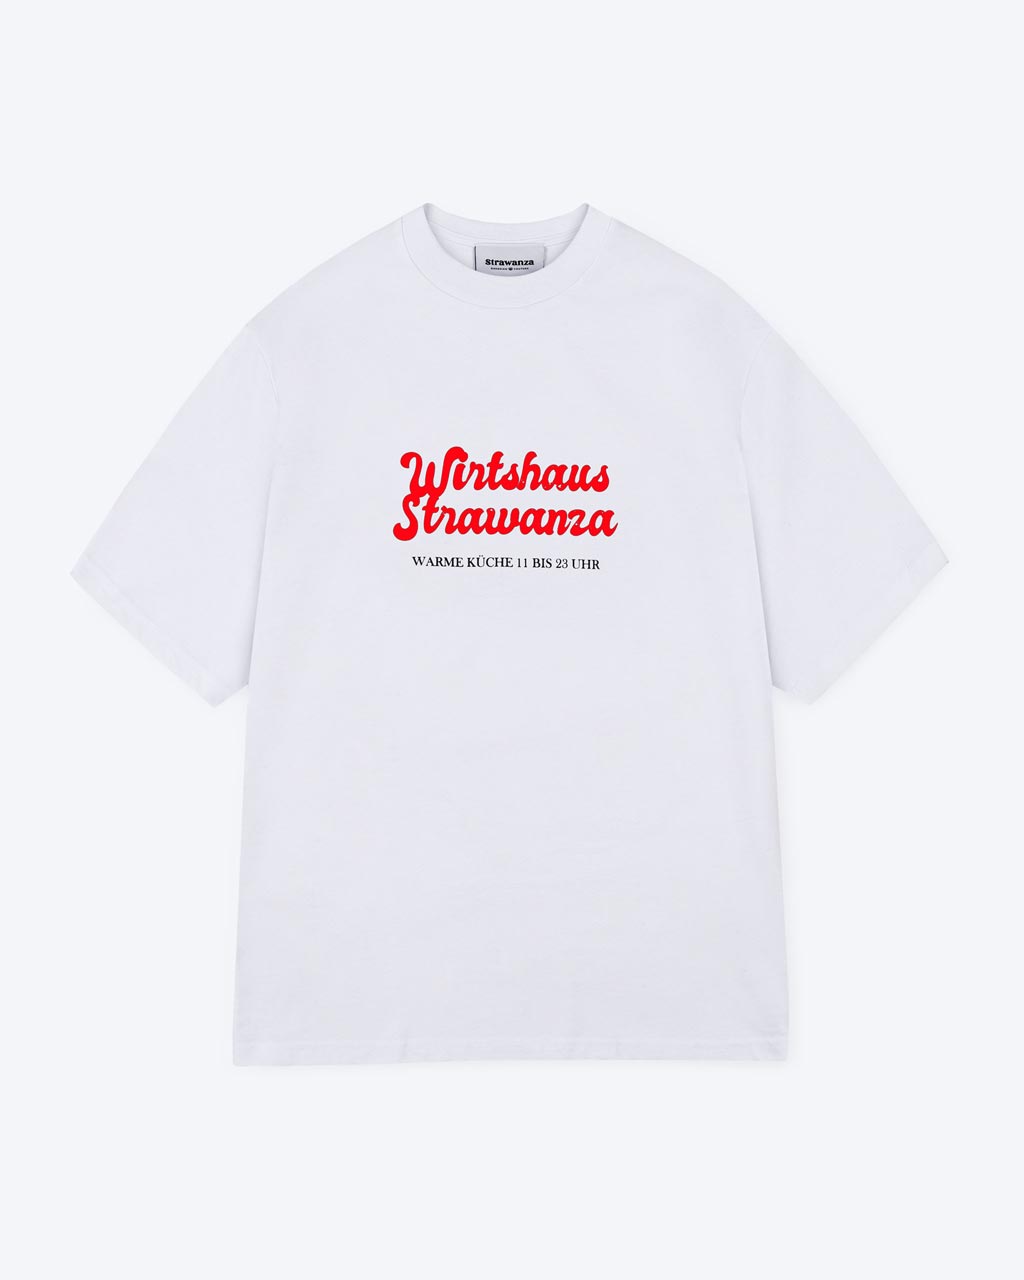 Ein weißes T-Shirt mit einem einerseits orangen "Wirtshaus Strawanza" Schriftzug aber auch andererseits einem schwarzen Schriftzug mit "WARME KÜCHE 11 BIS 23 UHR" als Motiv auf der Vorderseite.